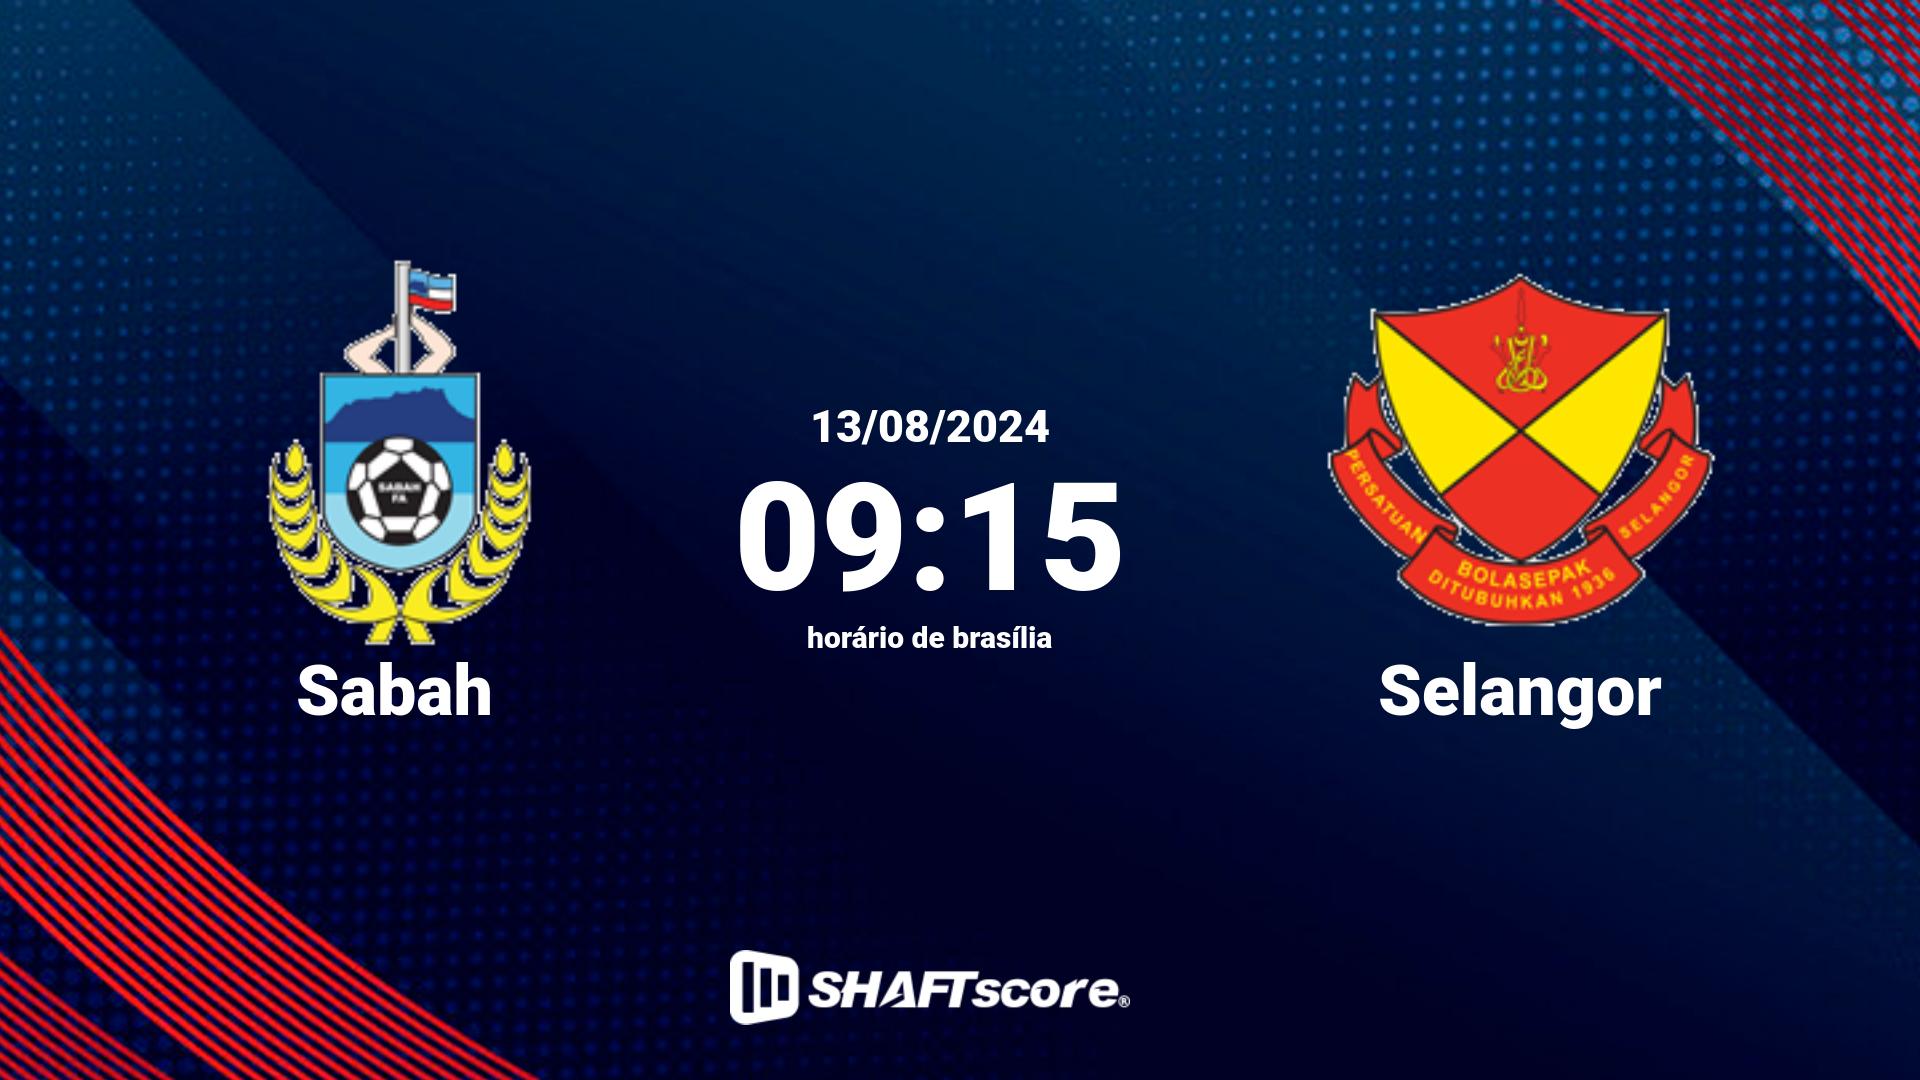 Estatísticas do jogo Sabah vs Selangor 13.08 09:15